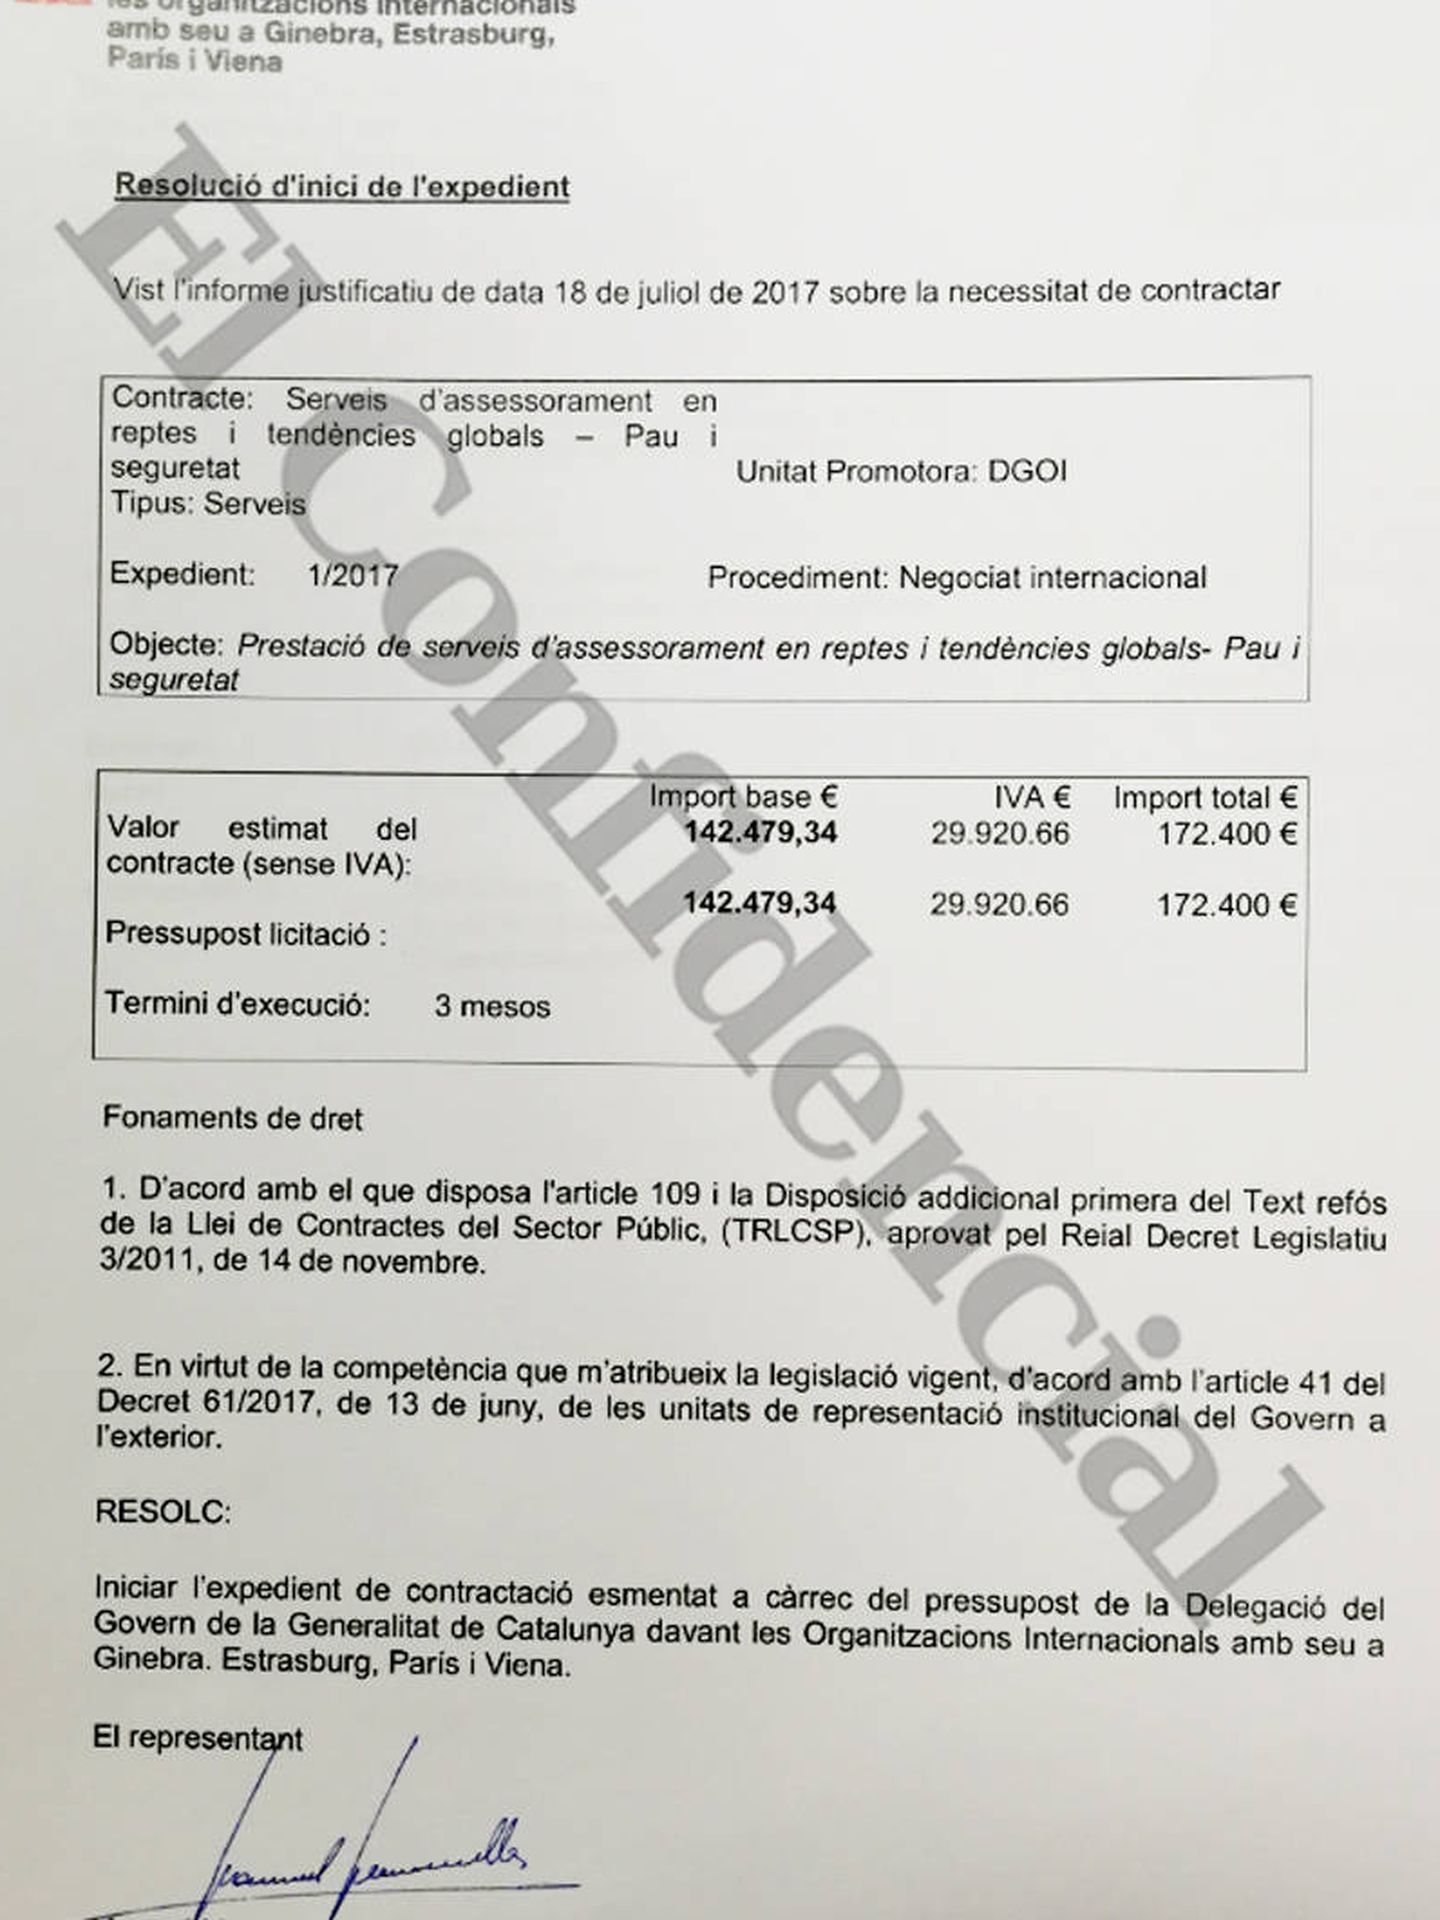 Contrato de la 'embajada' catalana en Ginebra con HCSS fechado en julio de 2017